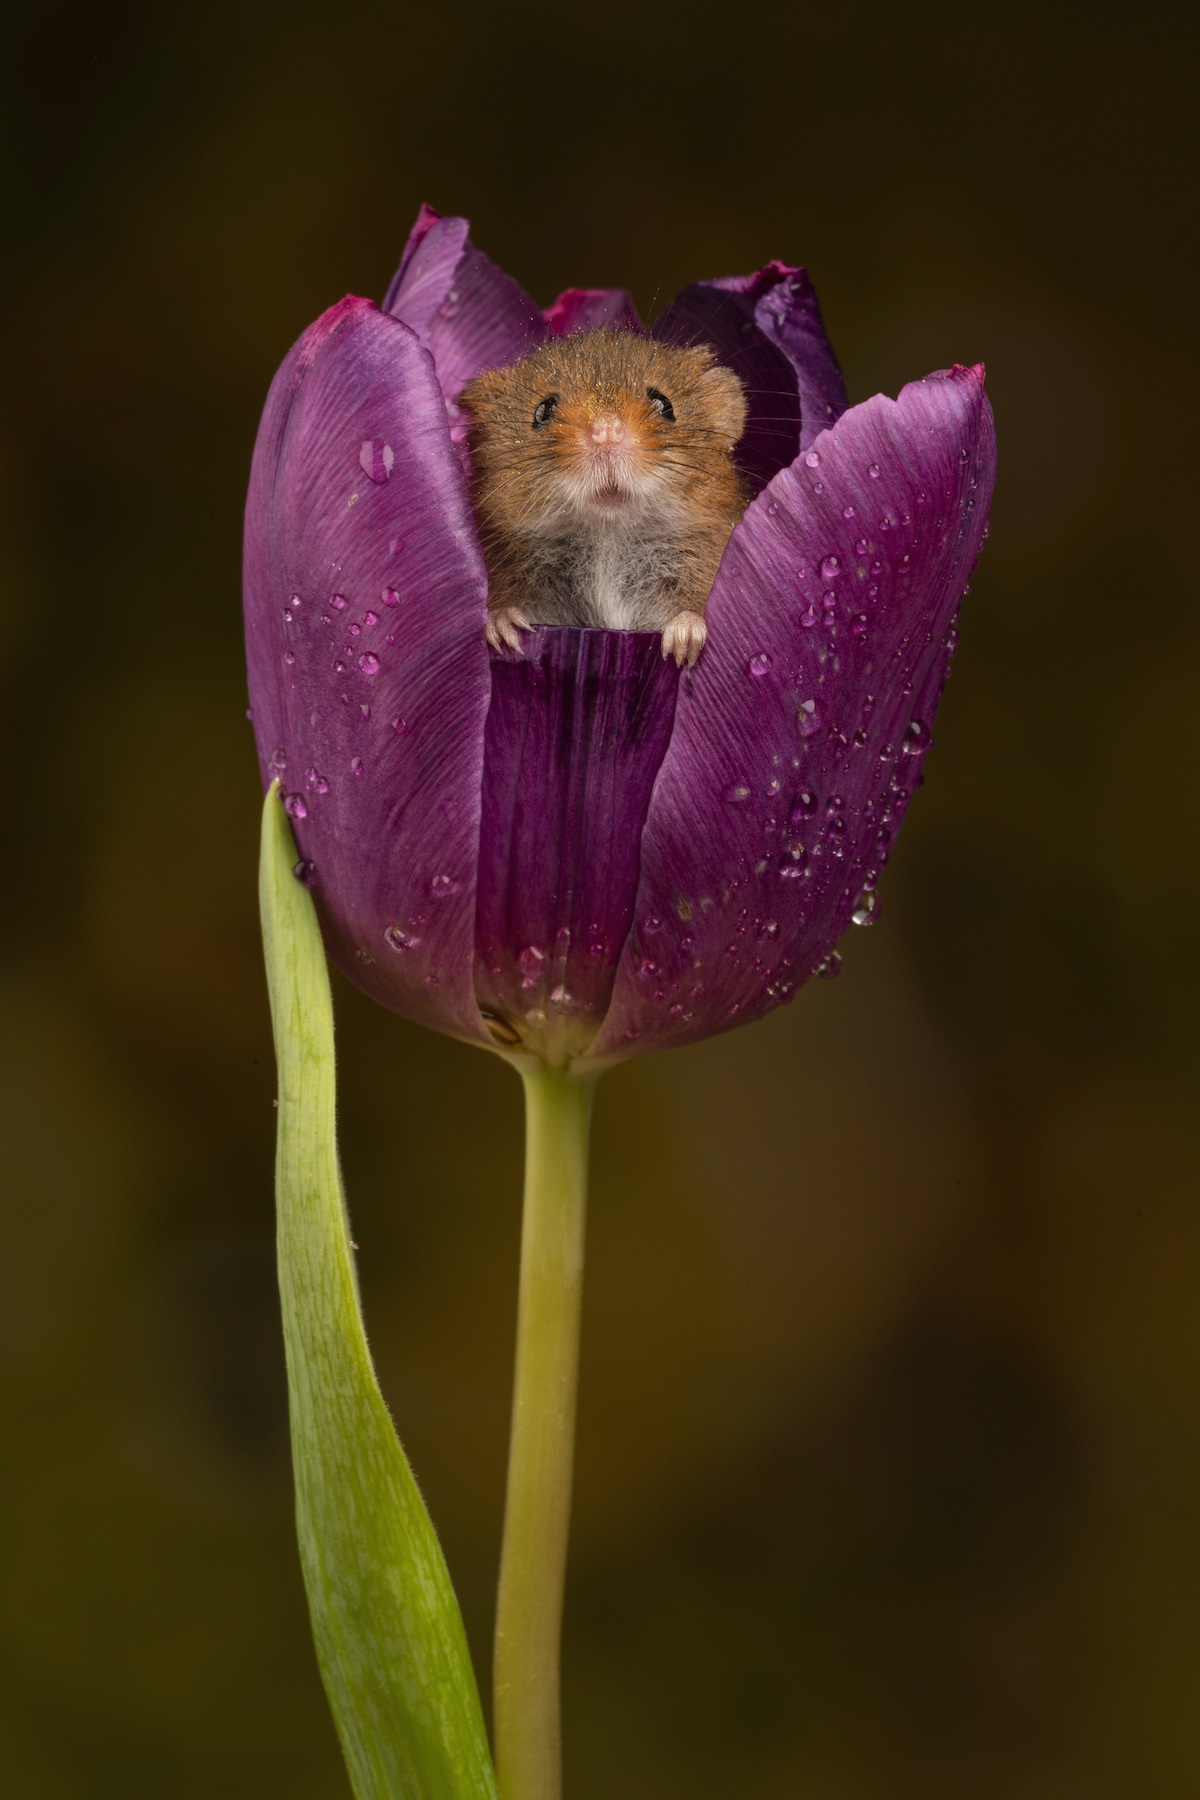 Cute Mouse Inside a Purple Tulip